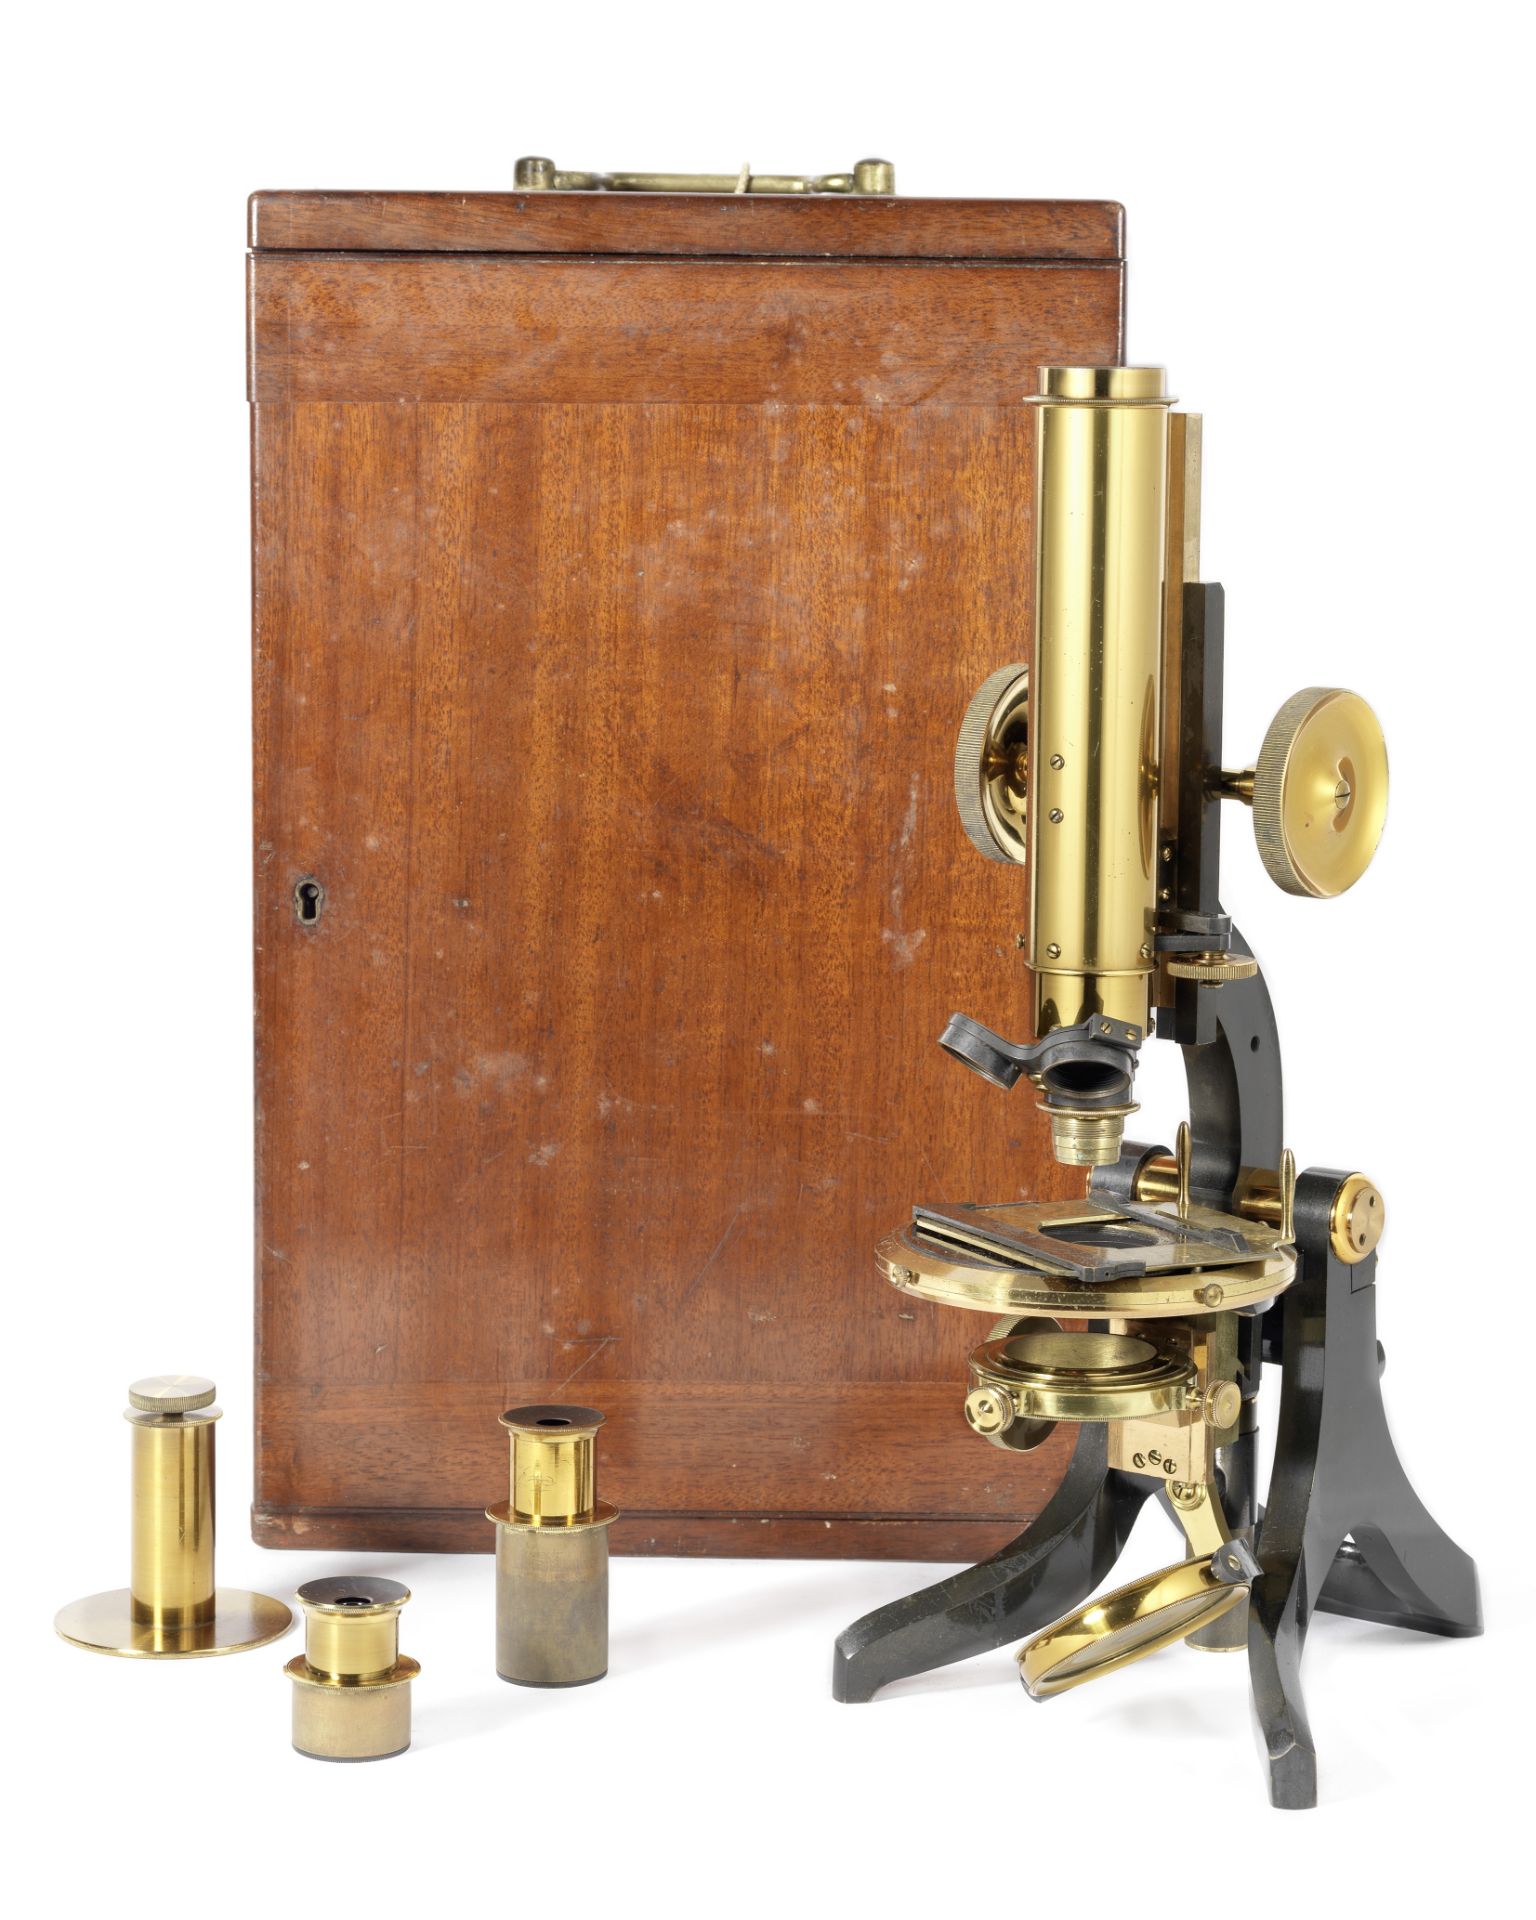 A Swift & Son monocular compound microscope, English, circa 1900,